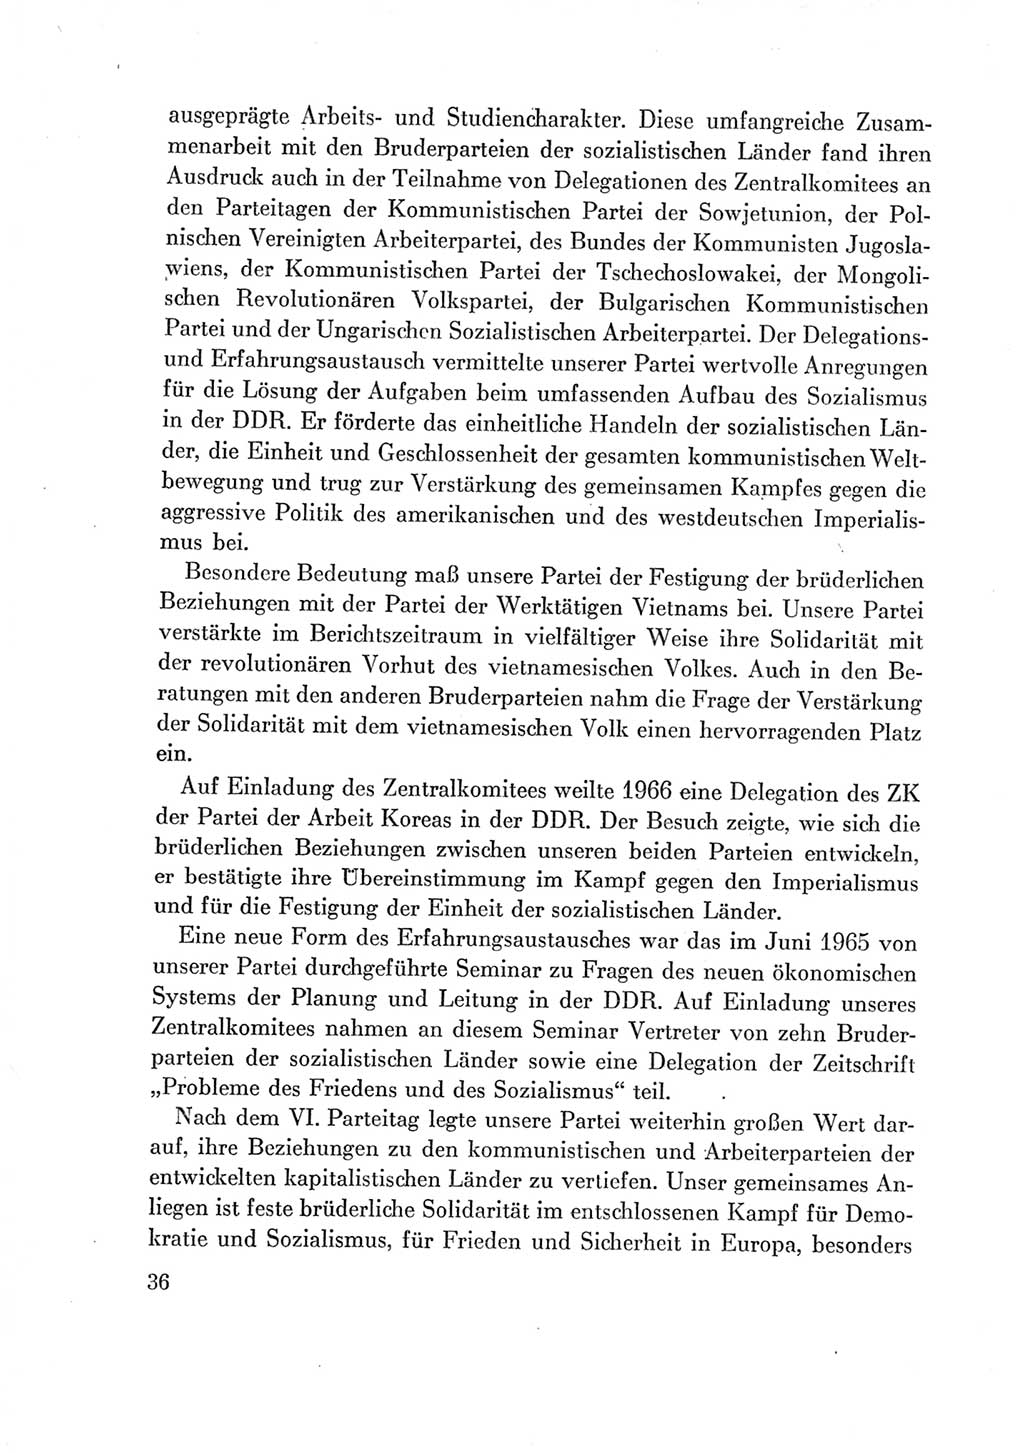 Protokoll der Verhandlungen des Ⅶ. Parteitages der Sozialistischen Einheitspartei Deutschlands (SED) [Deutsche Demokratische Republik (DDR)] 1967, Band Ⅳ, Seite 36 (Prot. Verh. Ⅶ. PT SED DDR 1967, Bd. Ⅳ, S. 36)